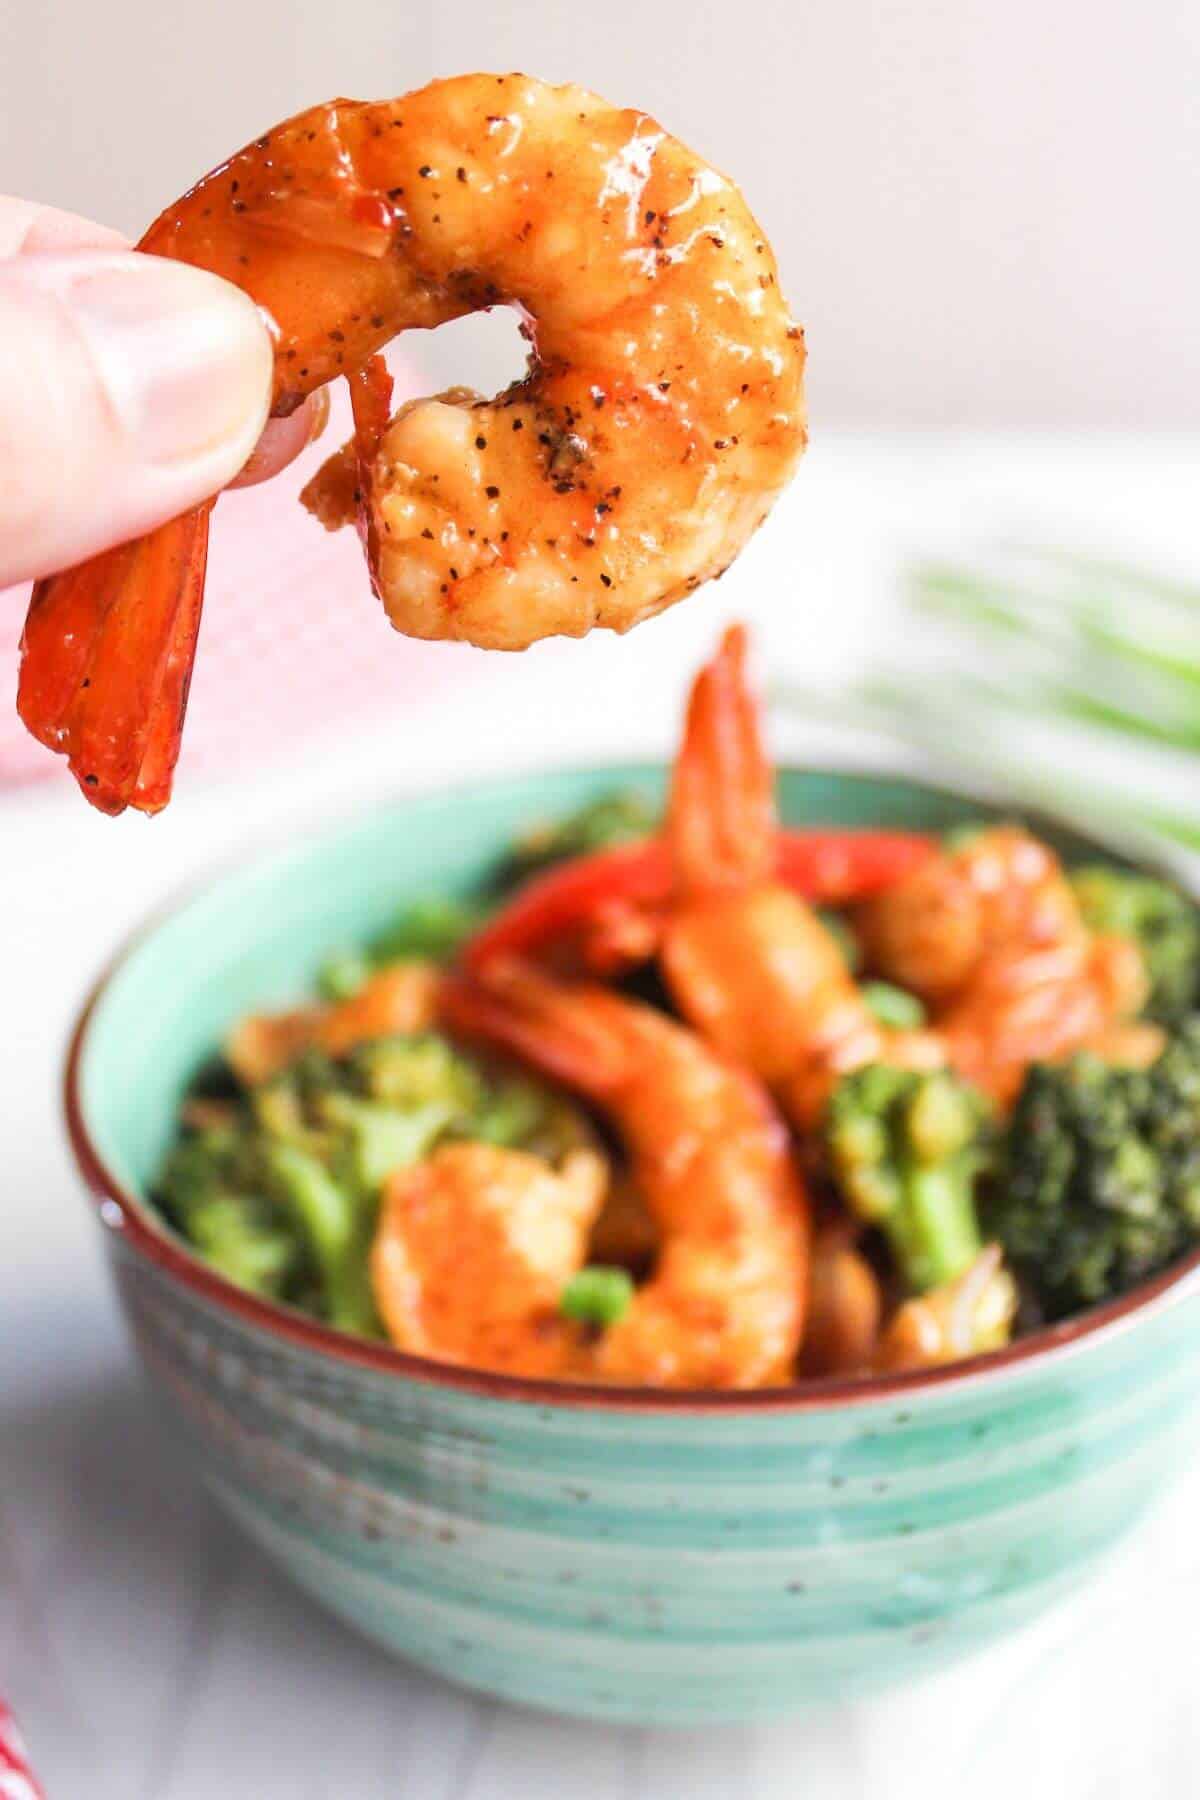 Holding shrimp over bowl of food.